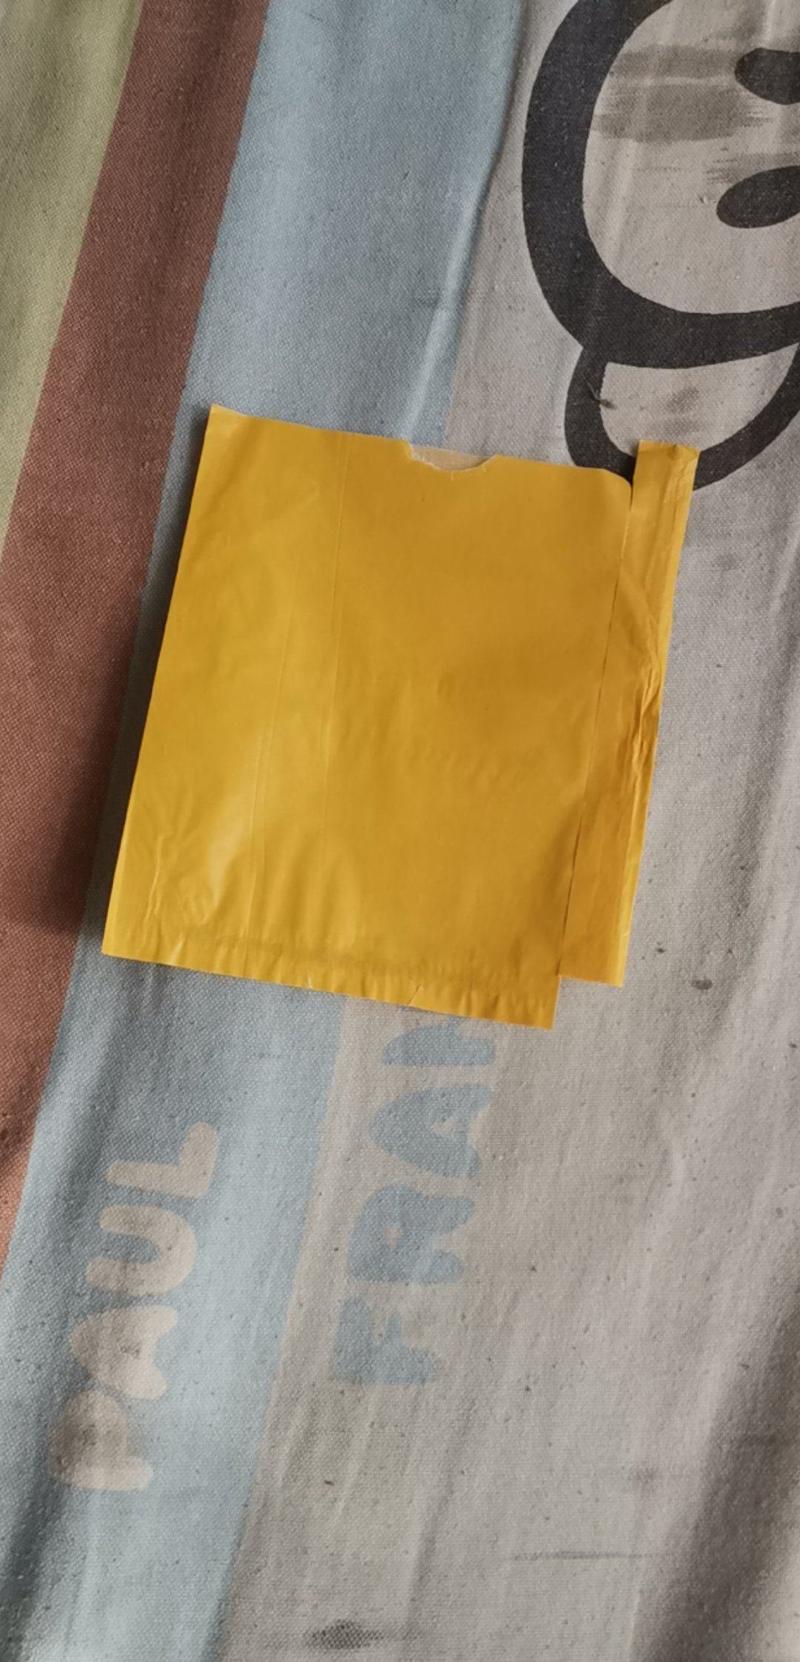 15x17黄蜡纸加白蜡纸带刀把带铁丝的梨子专用套袋。